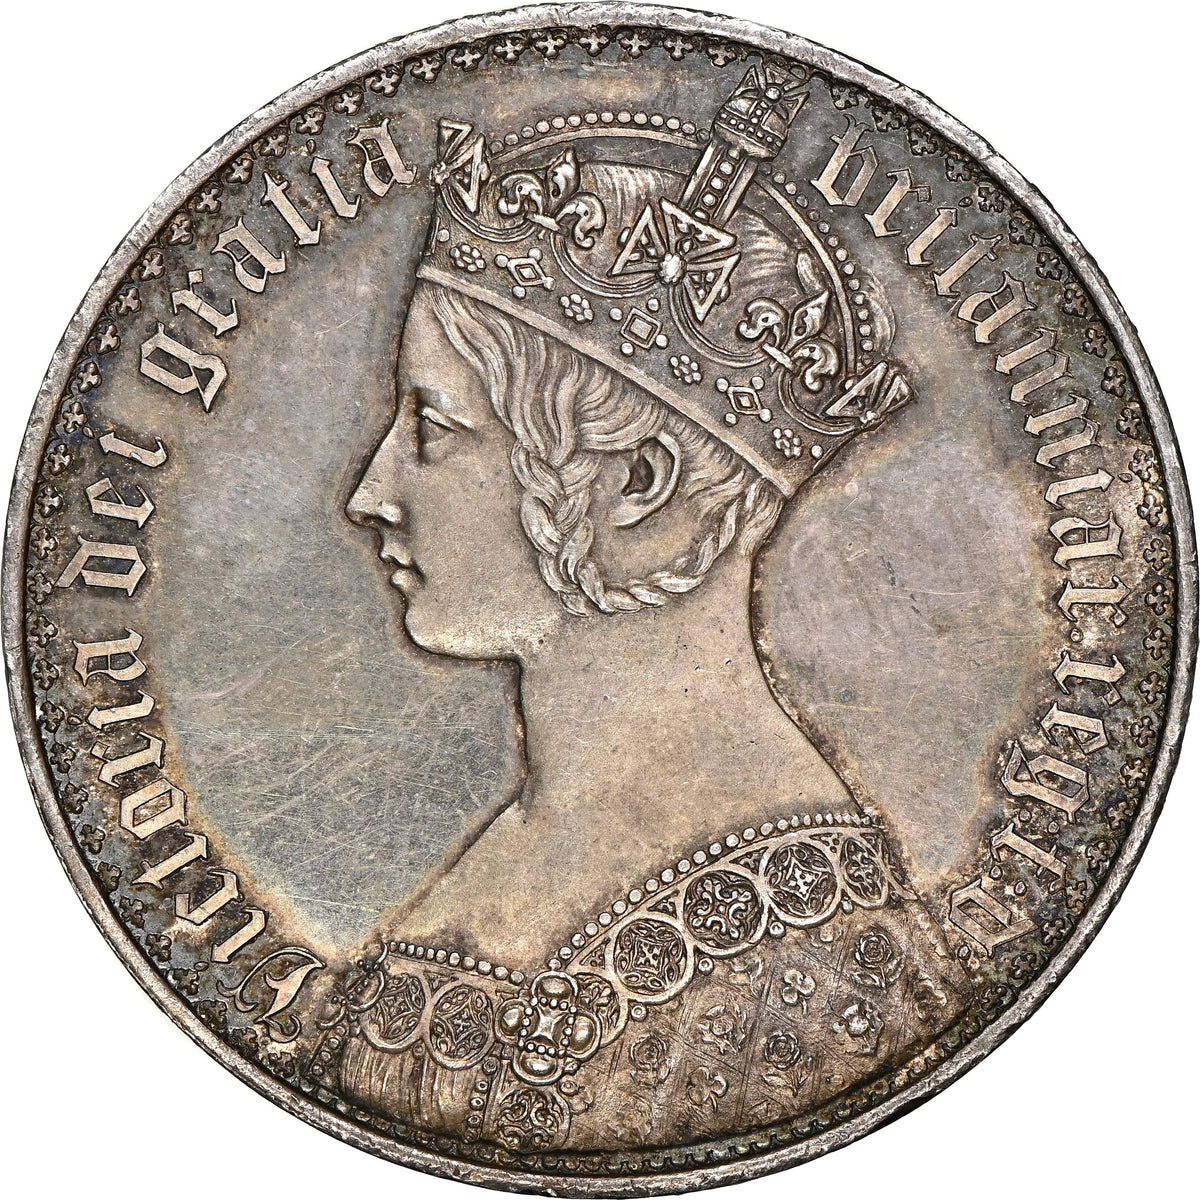 1847年 イギリス ヴィクトリア女王 ゴシッククラウン銀貨 NGC PF64 